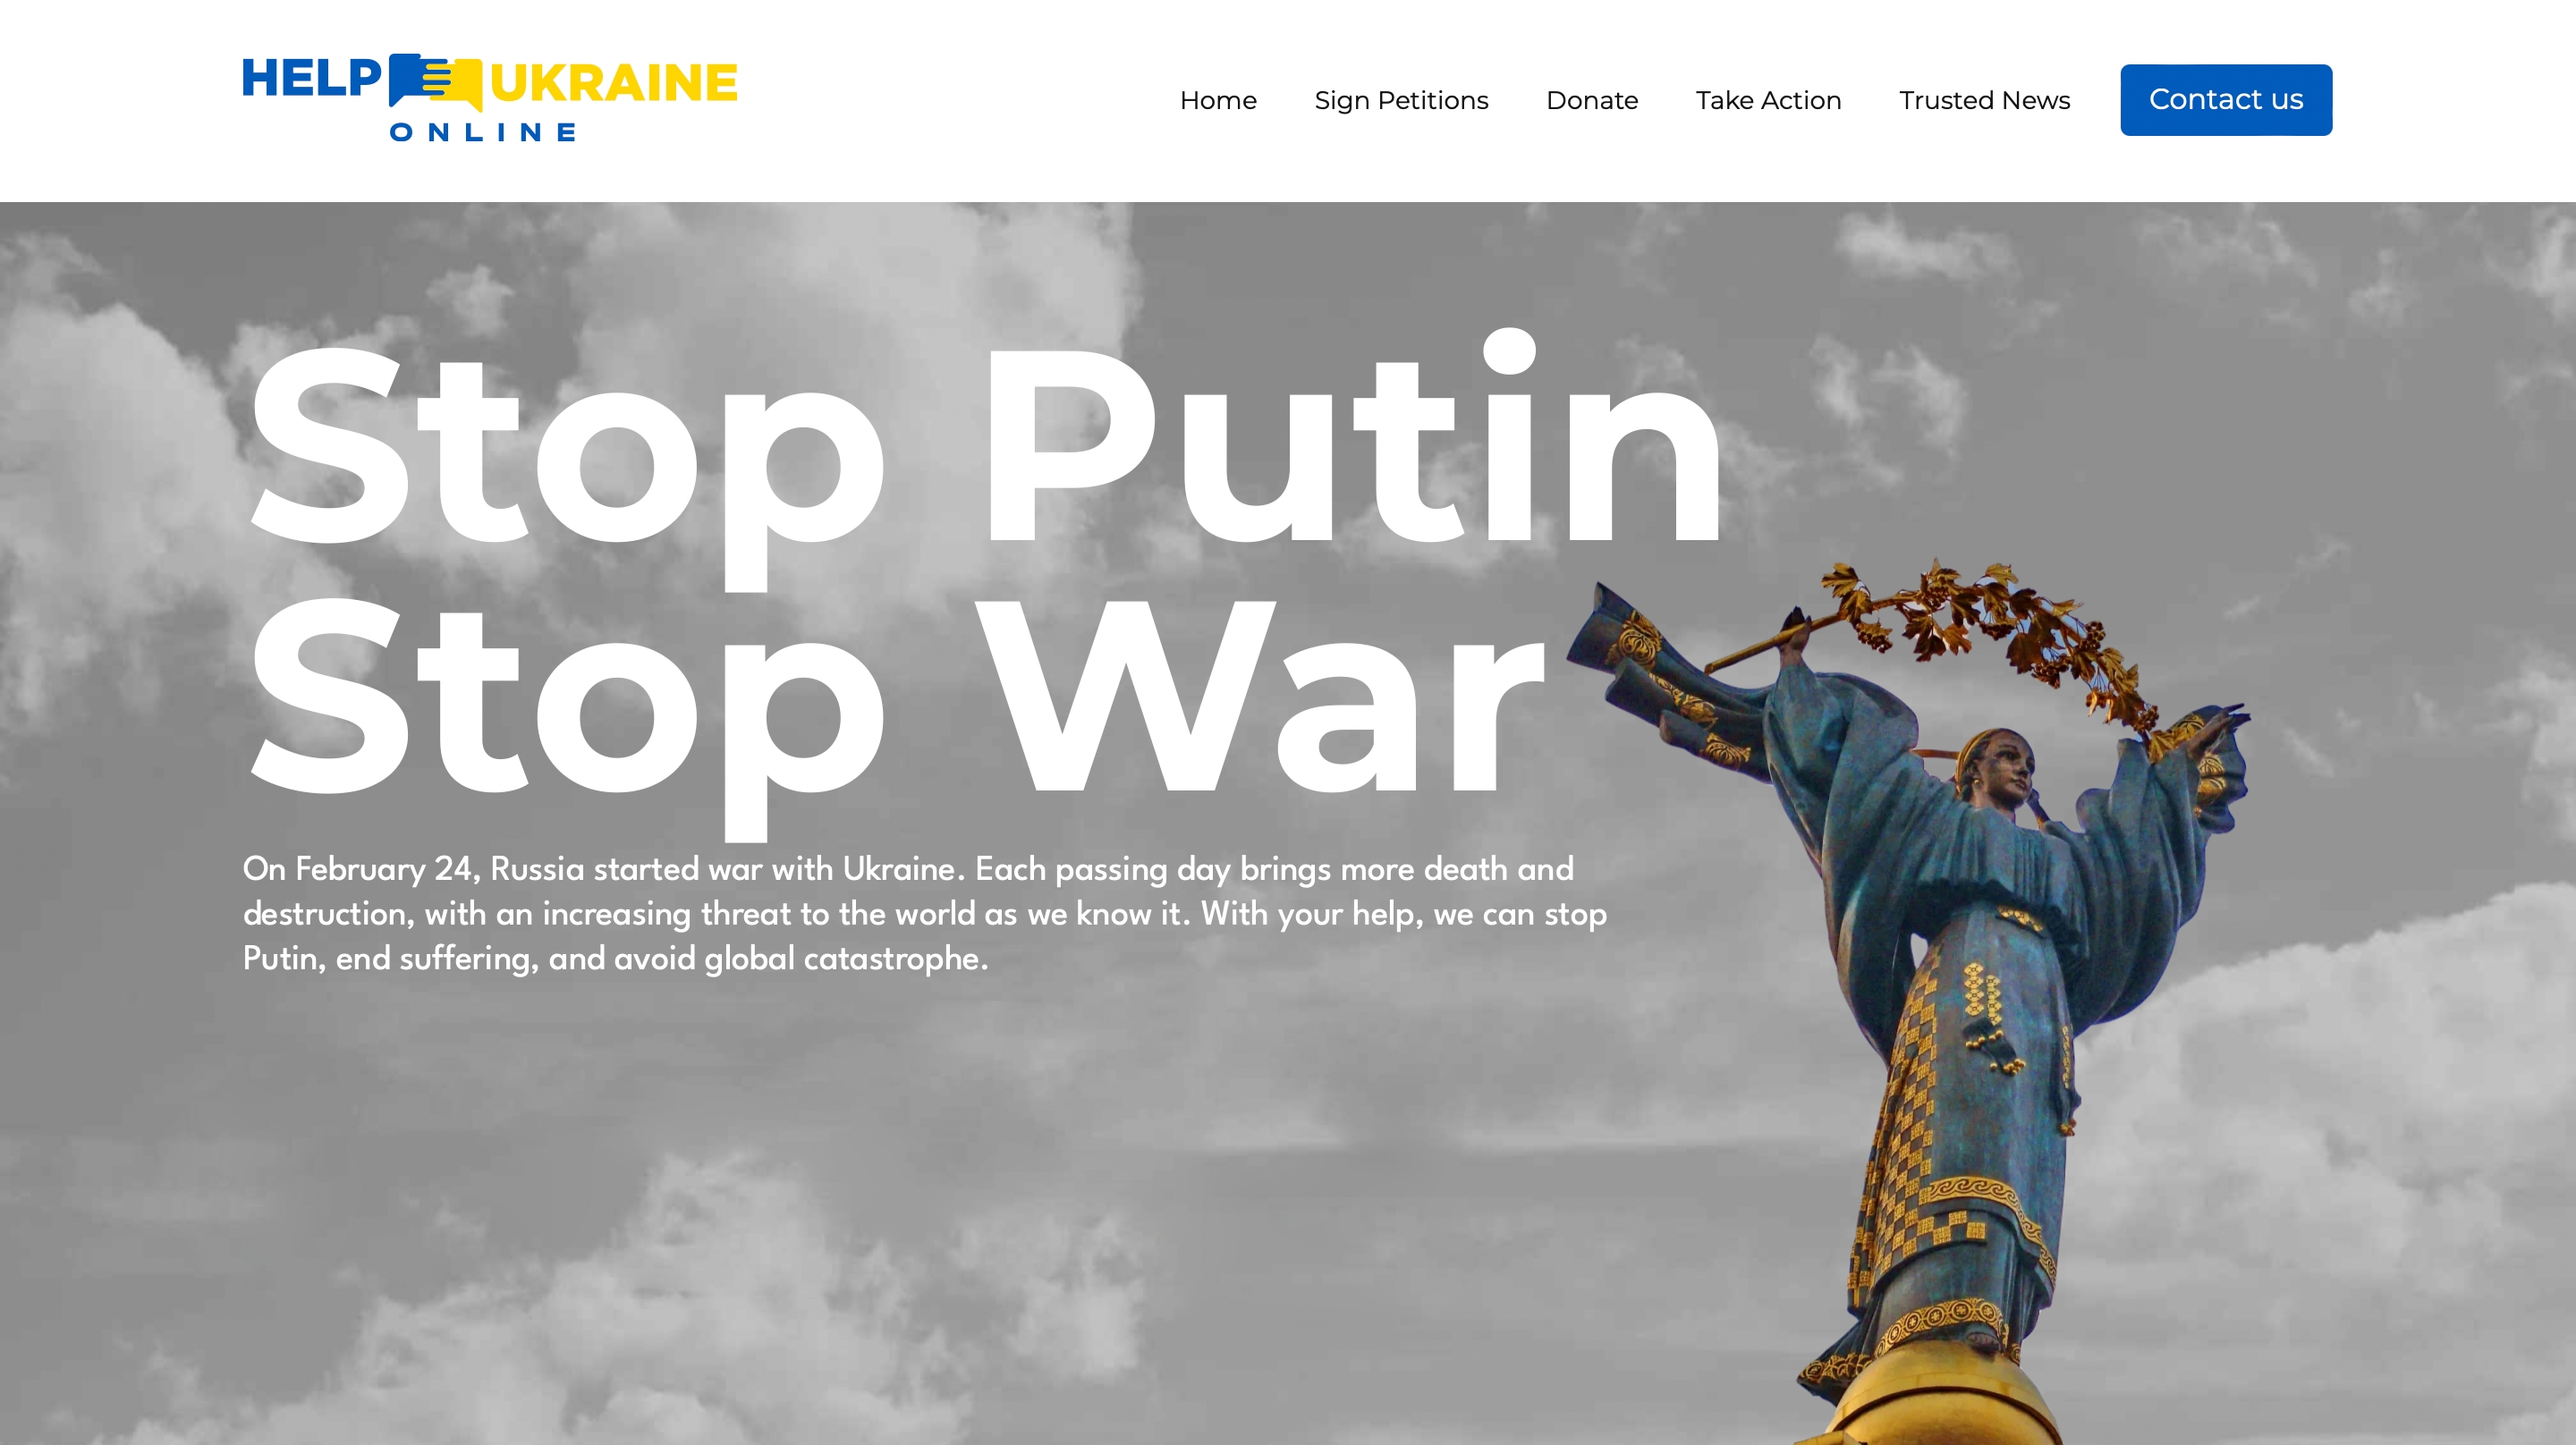 Help Ukraine Online: strona dla obcokrajowców, którzy chcą pomóc Ukrainie w czasie wojny